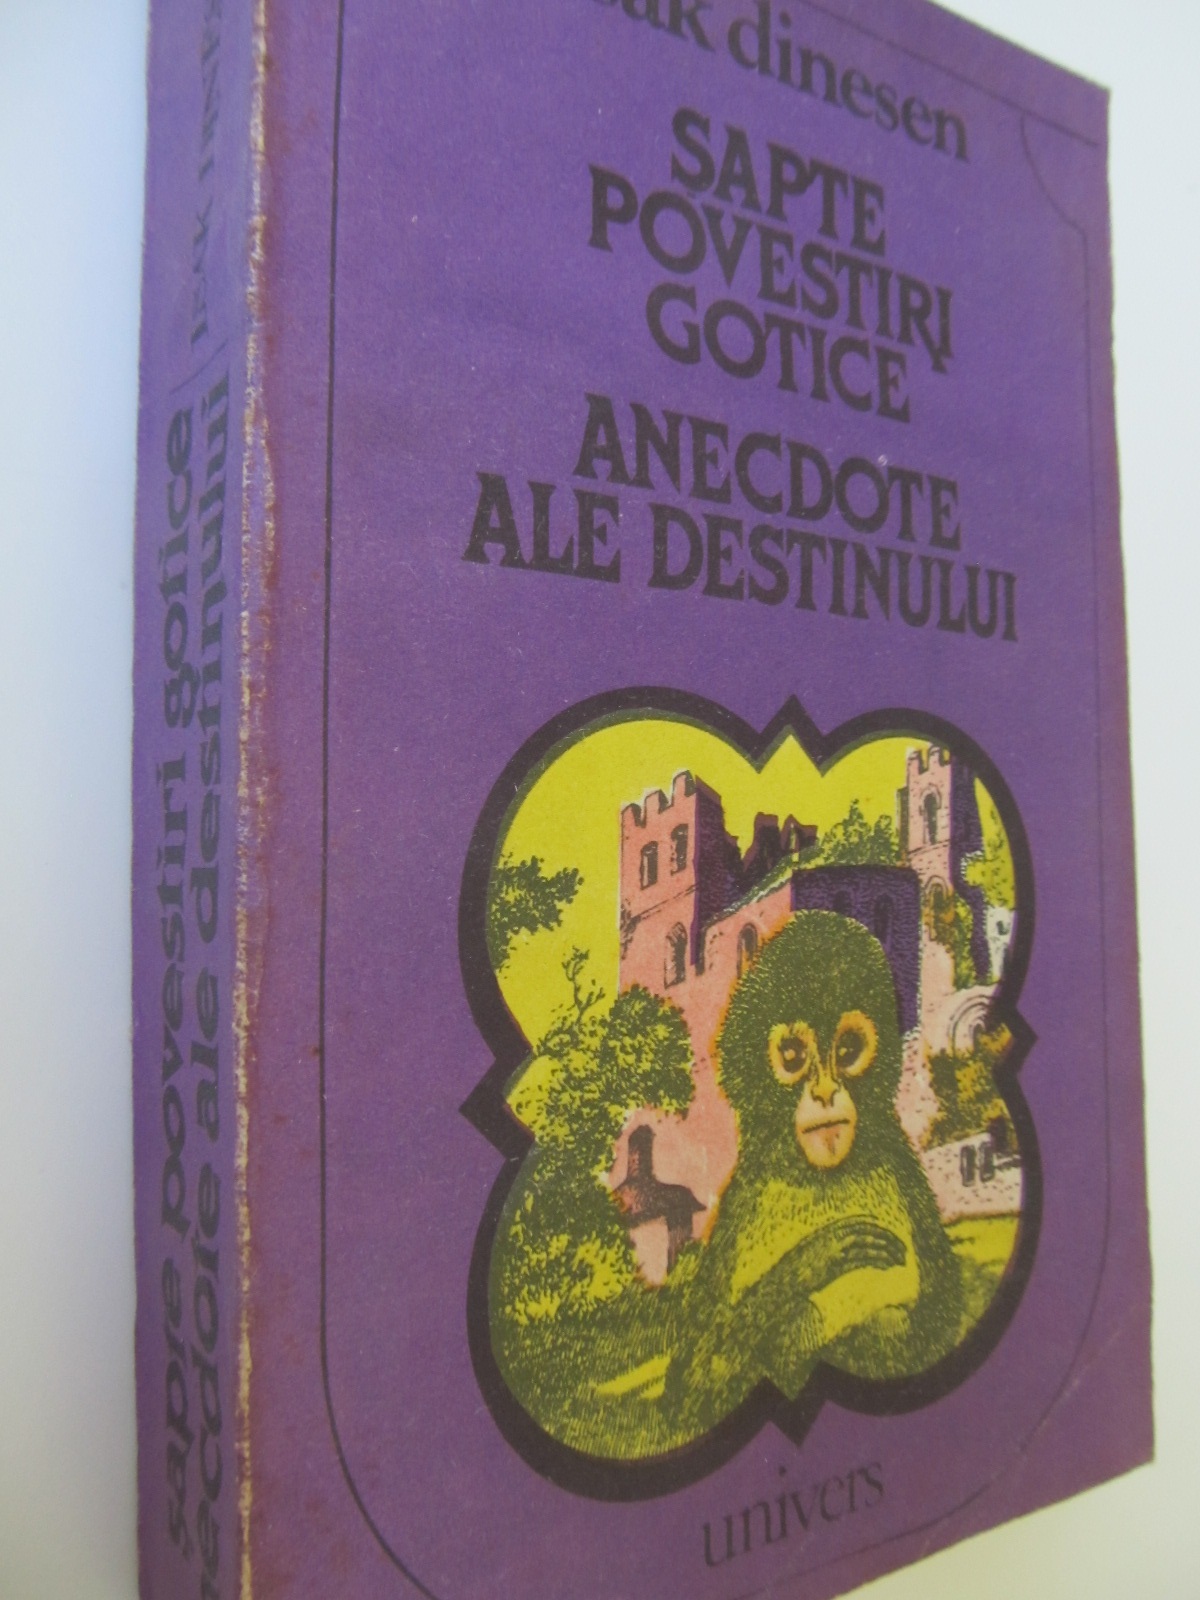 Sapte povestiri gotice - Anecdote ale destinului - Isak Dinesen | Detalii carte